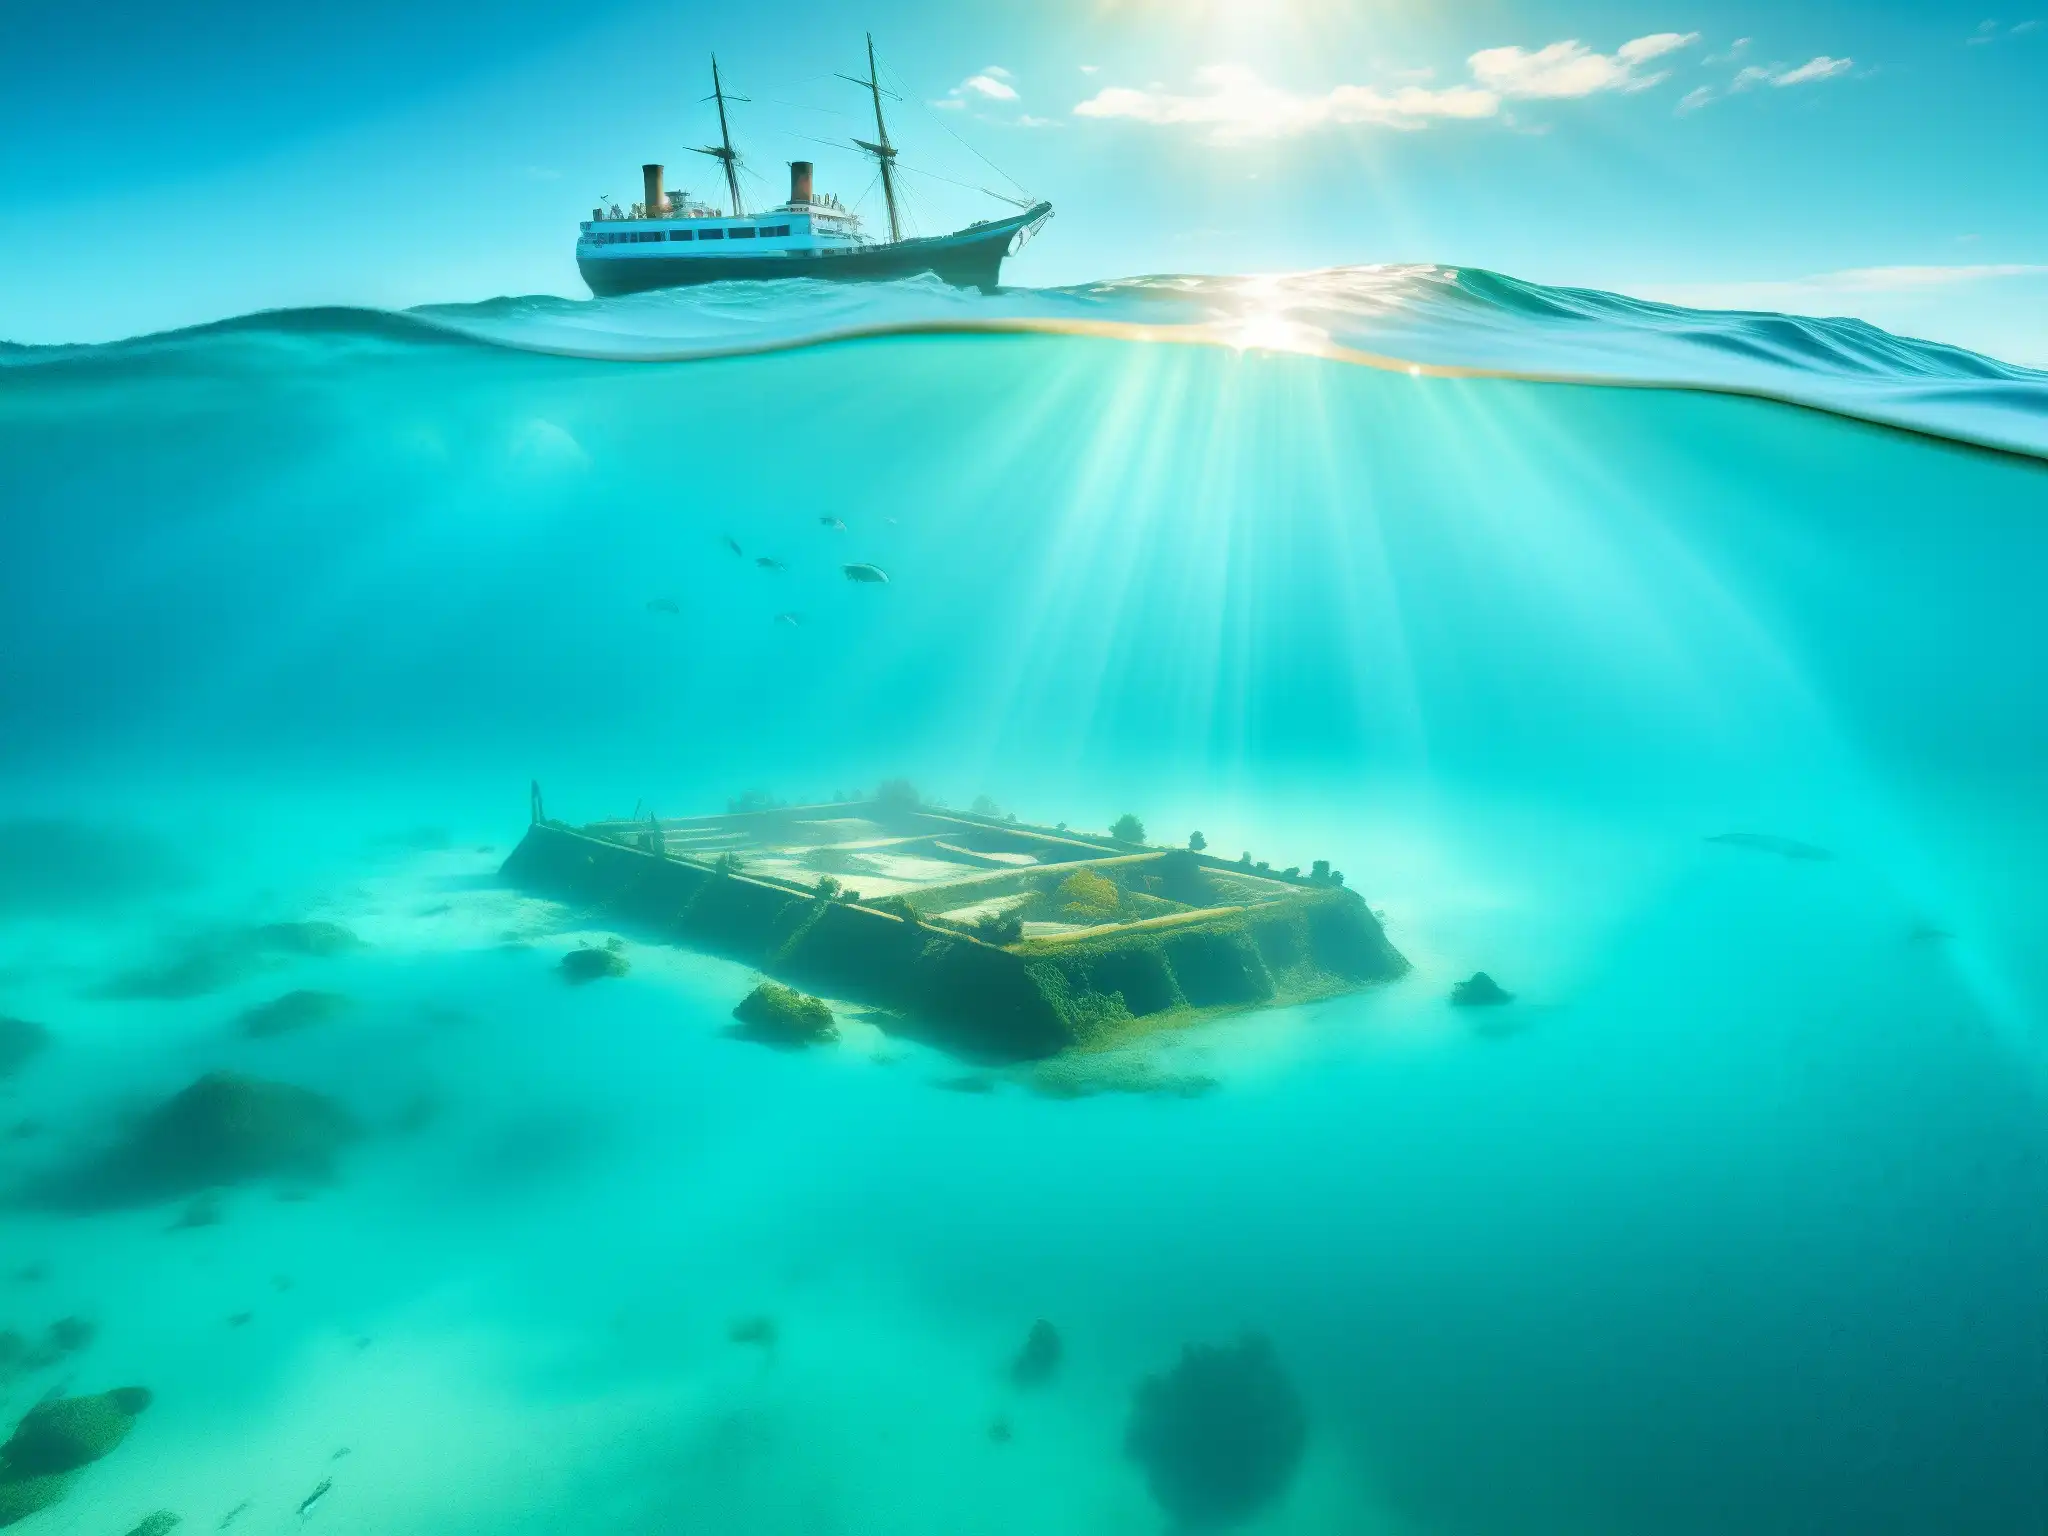 Agua turquesa del Triángulo de las Bermudas con barco hundido, peces coloridos y misteriosa isla